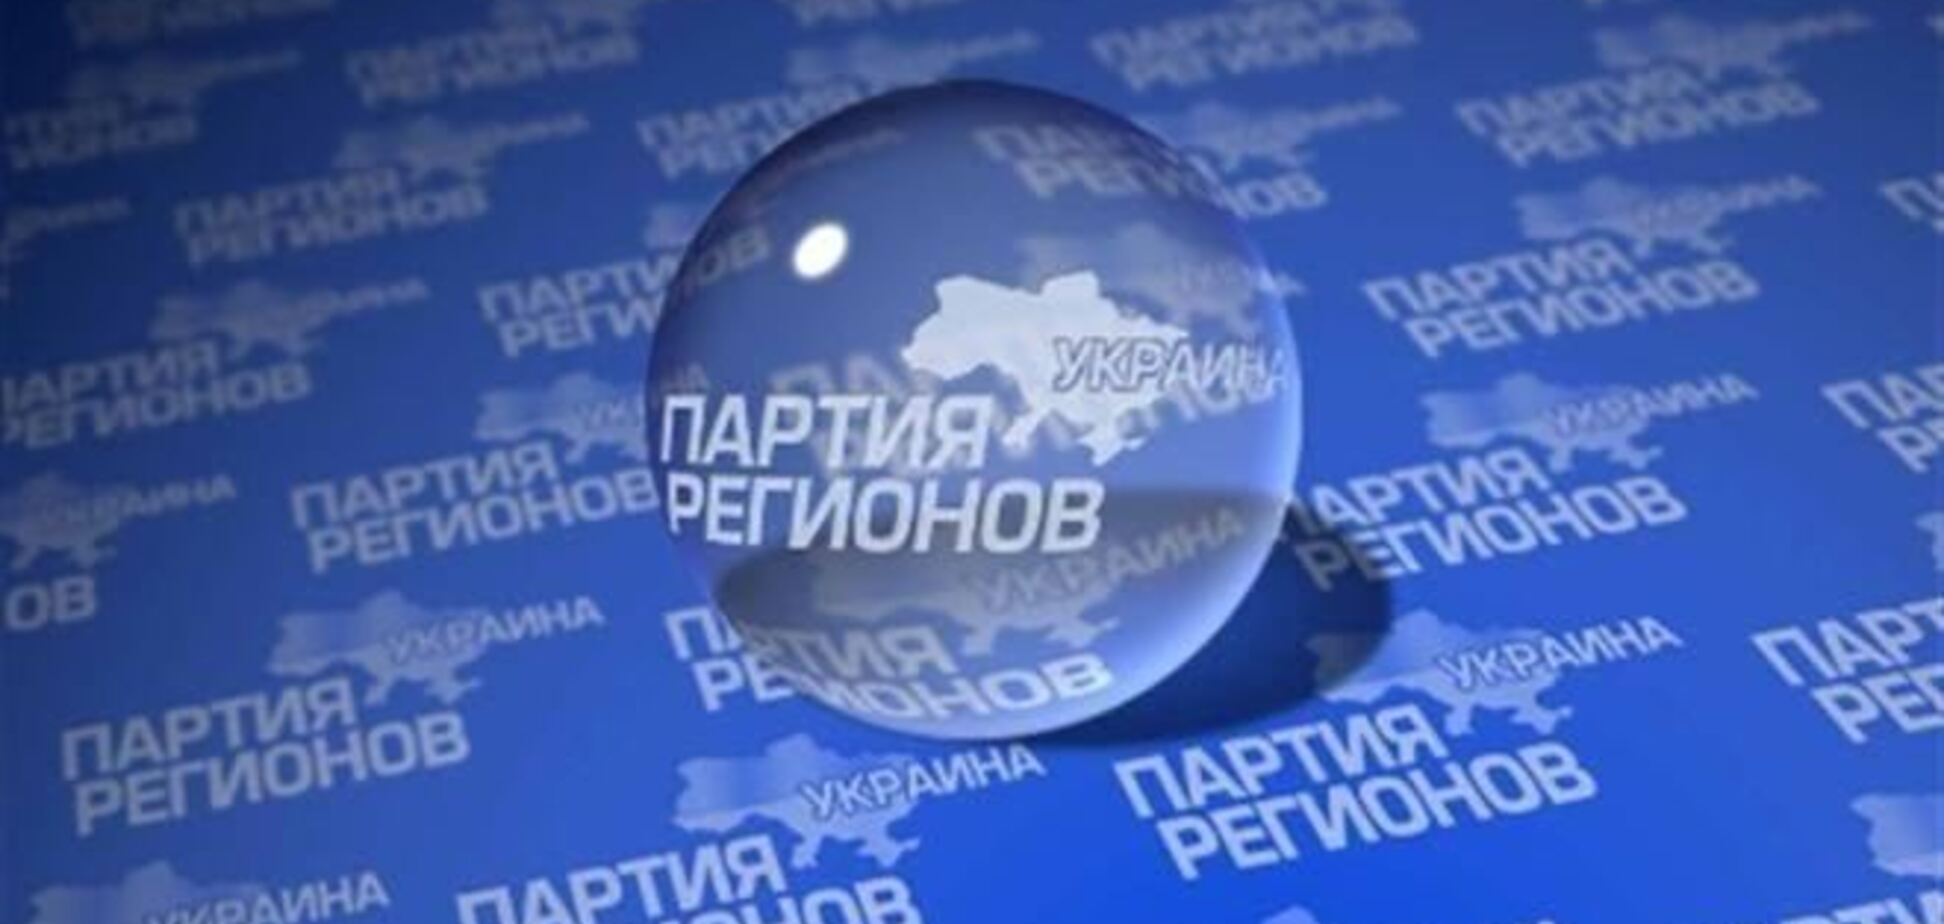 Регионалы Днепропетровщины заявили о давлении на членов их партии